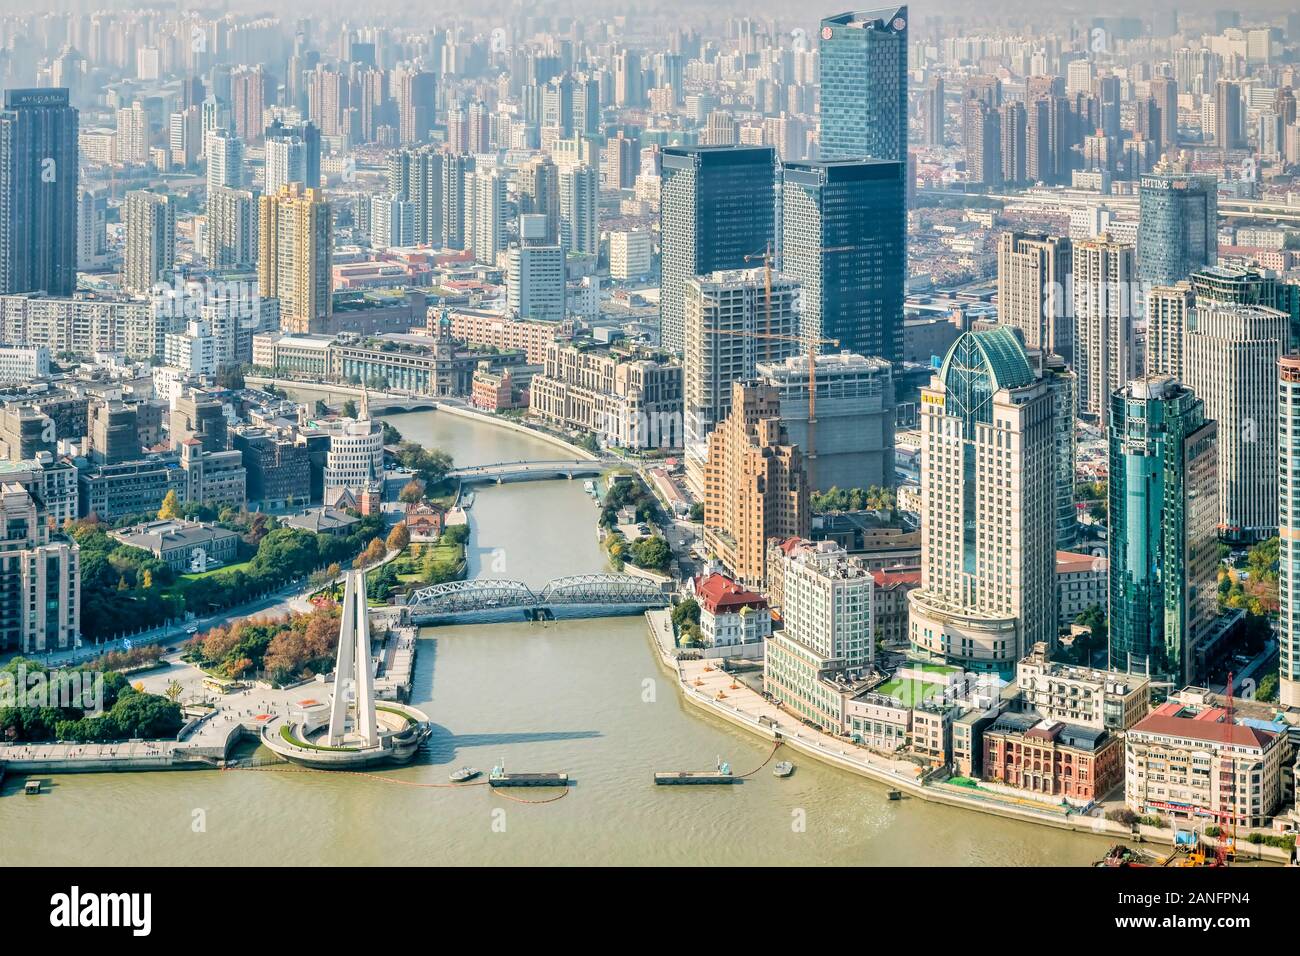 01 Décembre 2018 : Shanghai, Chine - Vue de Suzhou Creek à la confluence avec la rivière Huangpu, de l'Oriental Pearl Tower. Banque D'Images